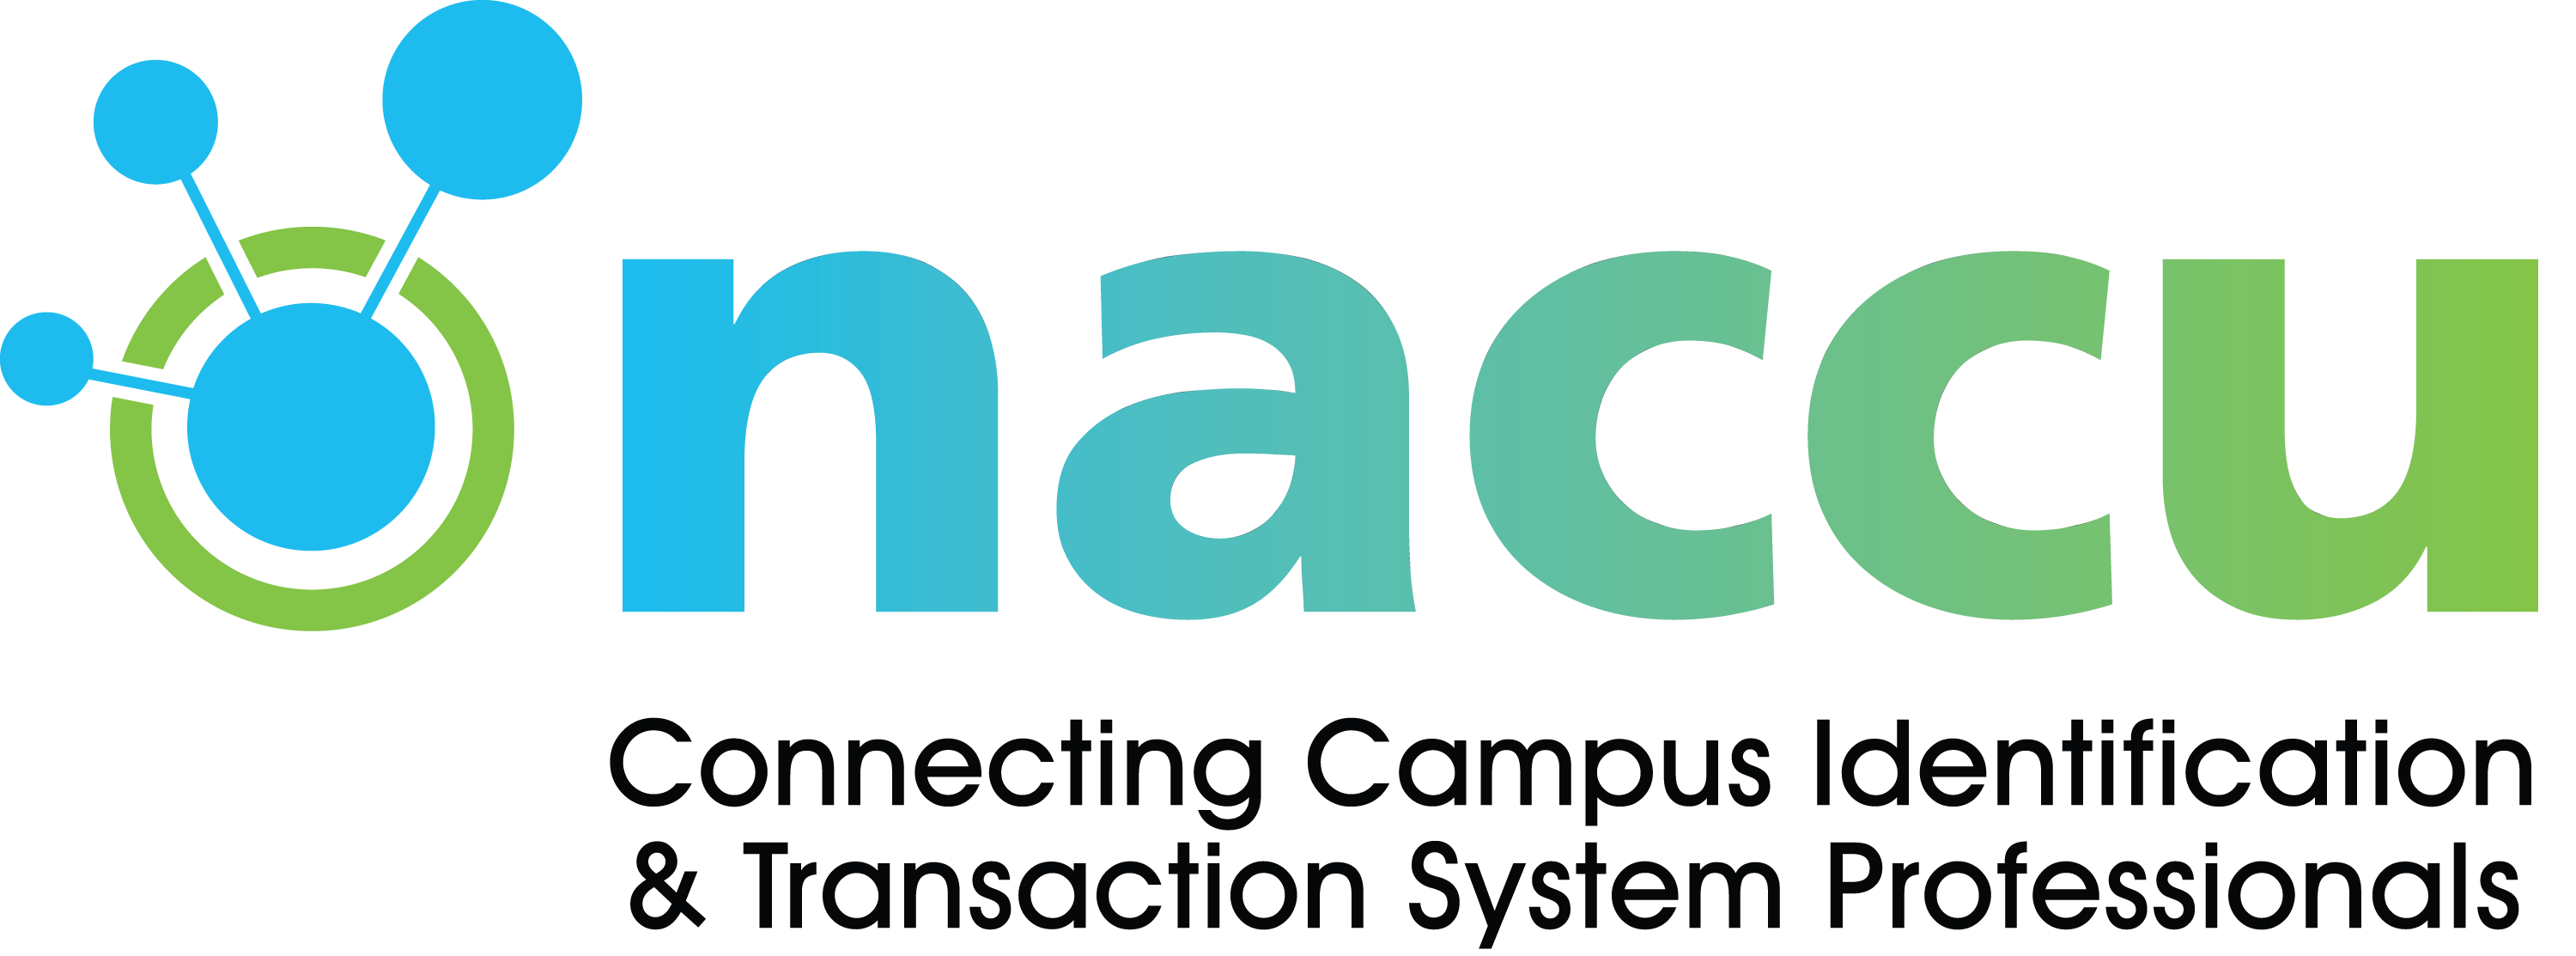 NACCU_logo_2018_transparent_LARGE.png